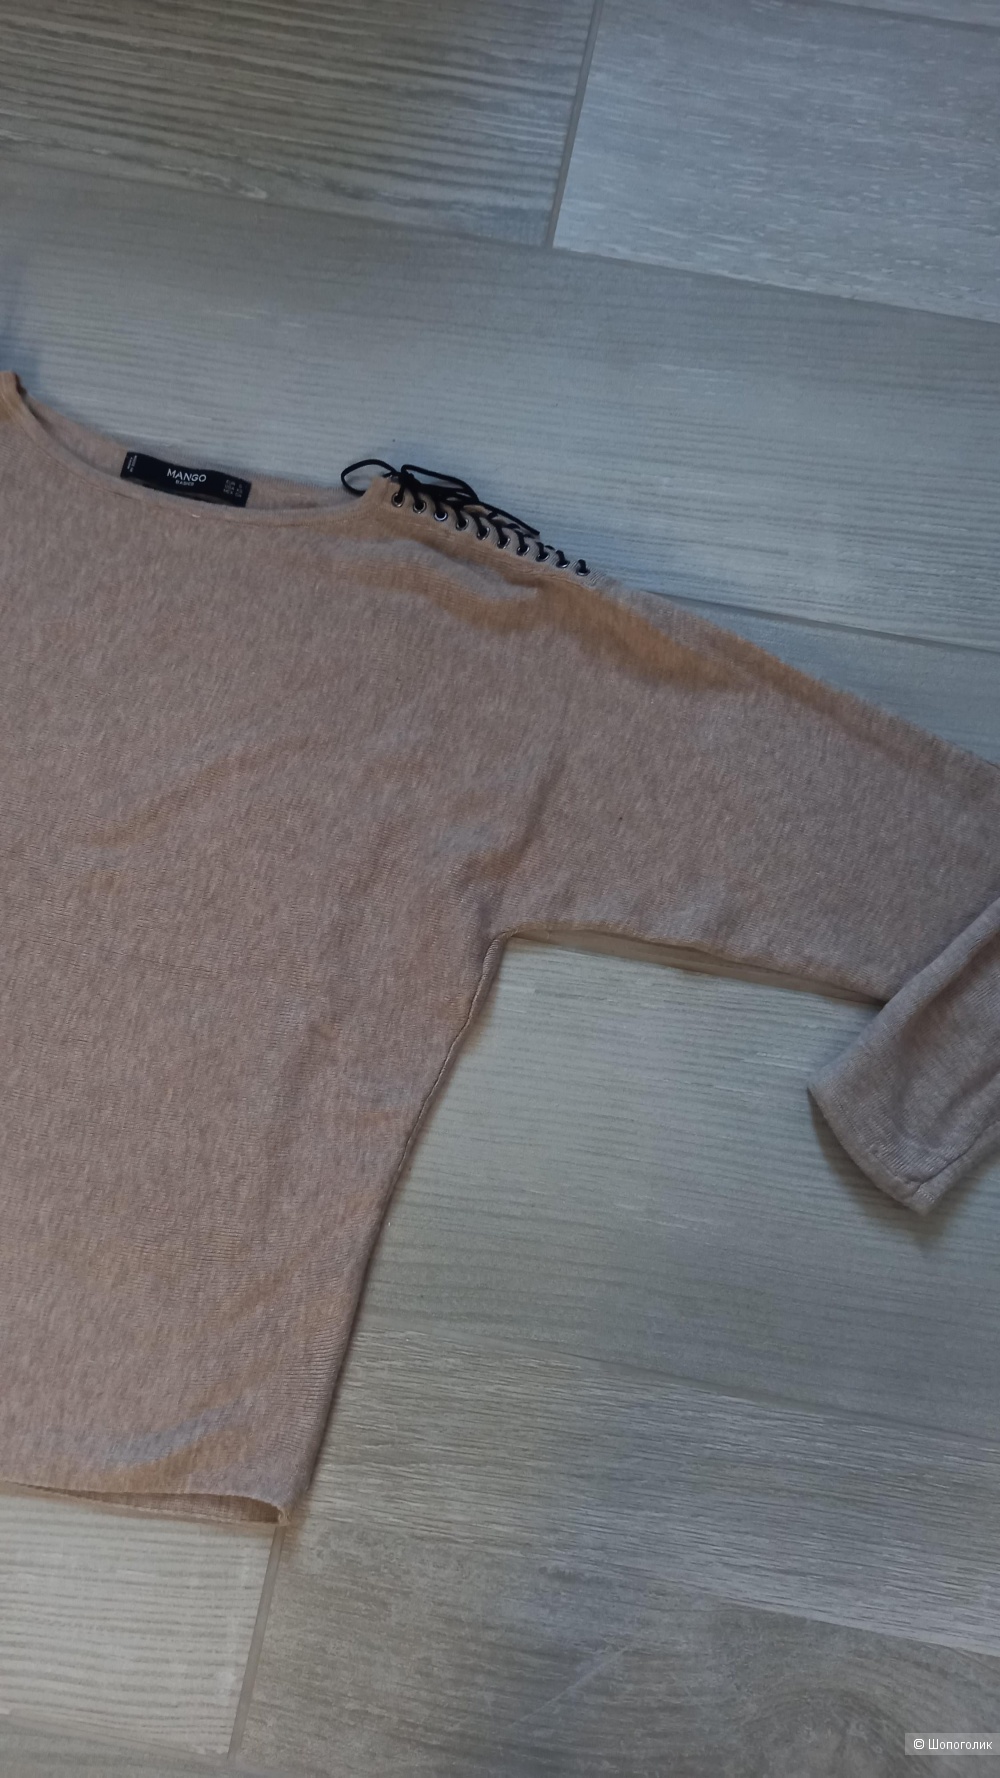 Пуловер mango размер s